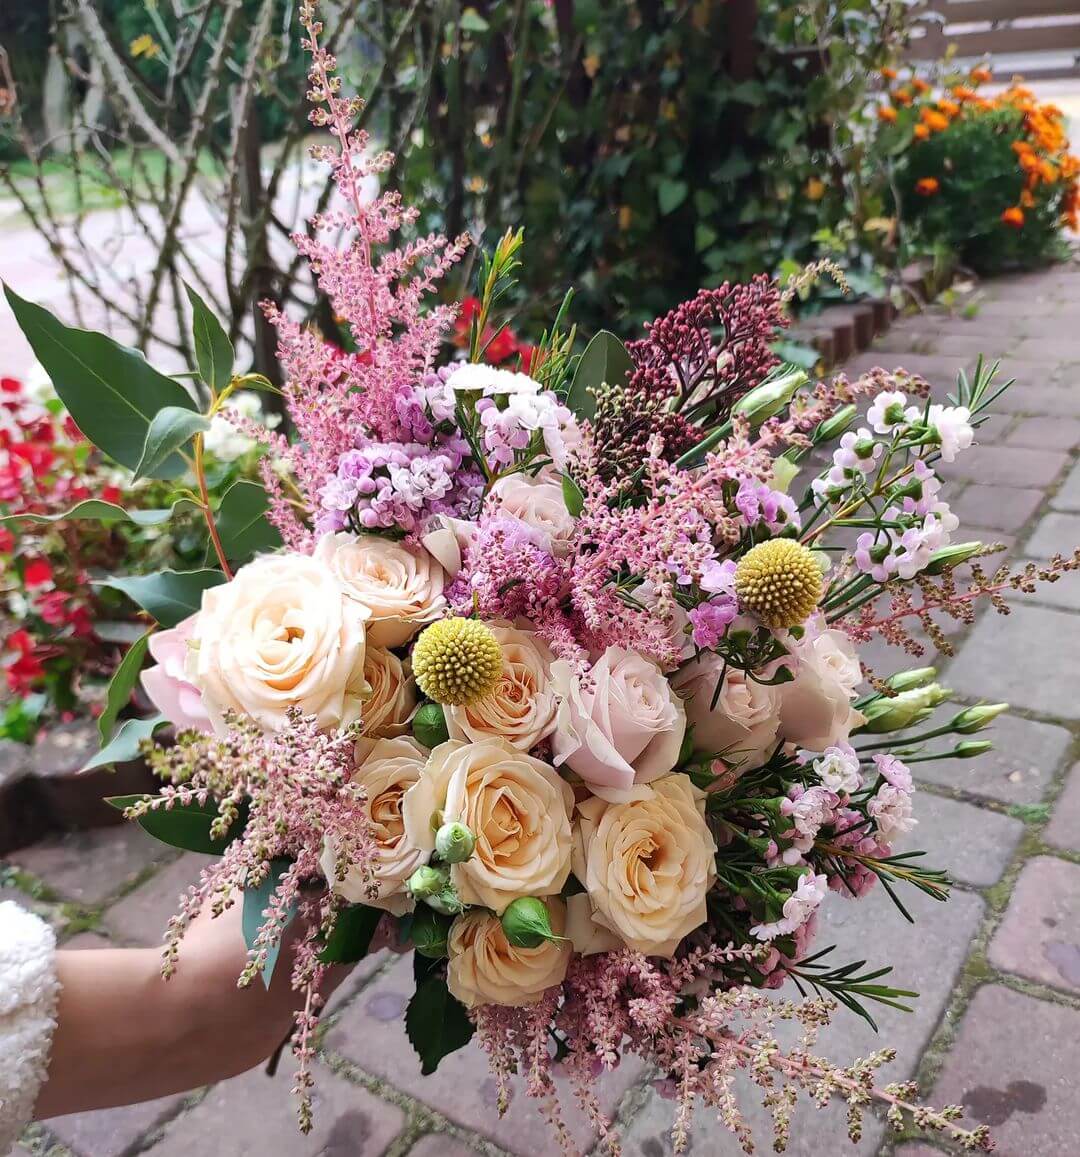 A Bushy Wedding Bouquet